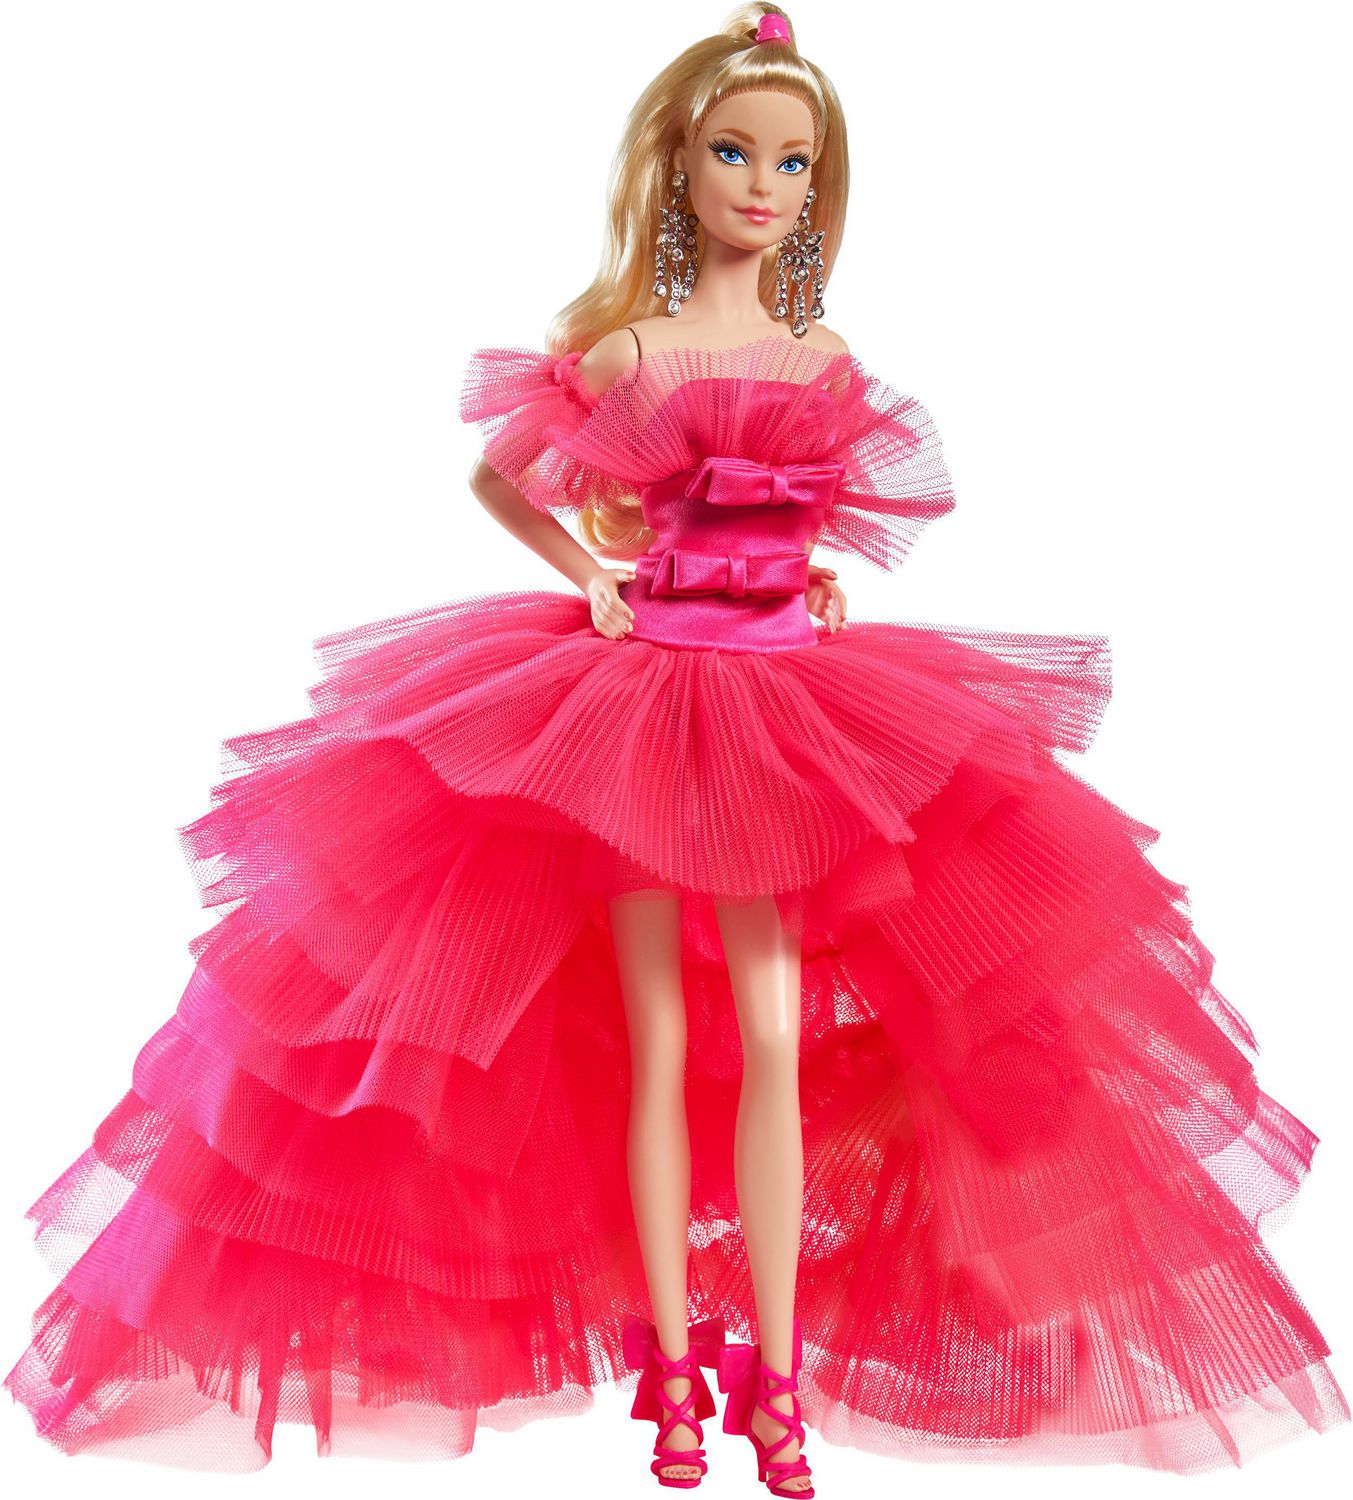 【メールで】 Cool Collecting Barbie Doll - Limited Edition Barbie ...